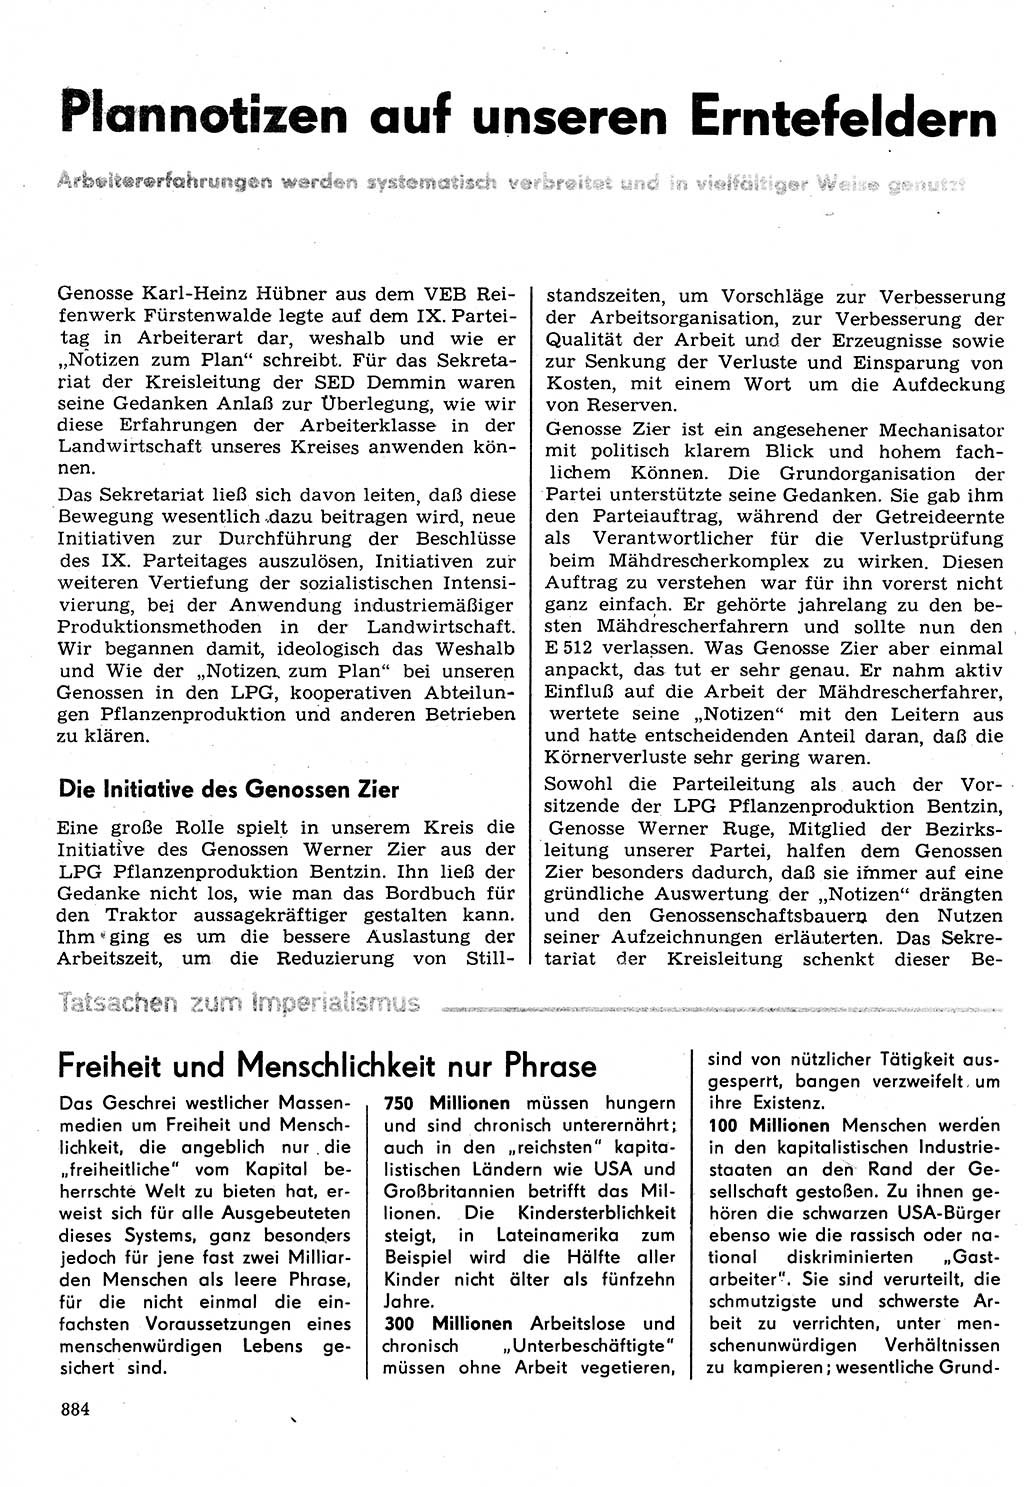 Neuer Weg (NW), Organ des Zentralkomitees (ZK) der SED (Sozialistische Einheitspartei Deutschlands) für Fragen des Parteilebens, 31. Jahrgang [Deutsche Demokratische Republik (DDR)] 1976, Seite 884 (NW ZK SED DDR 1976, S. 884)